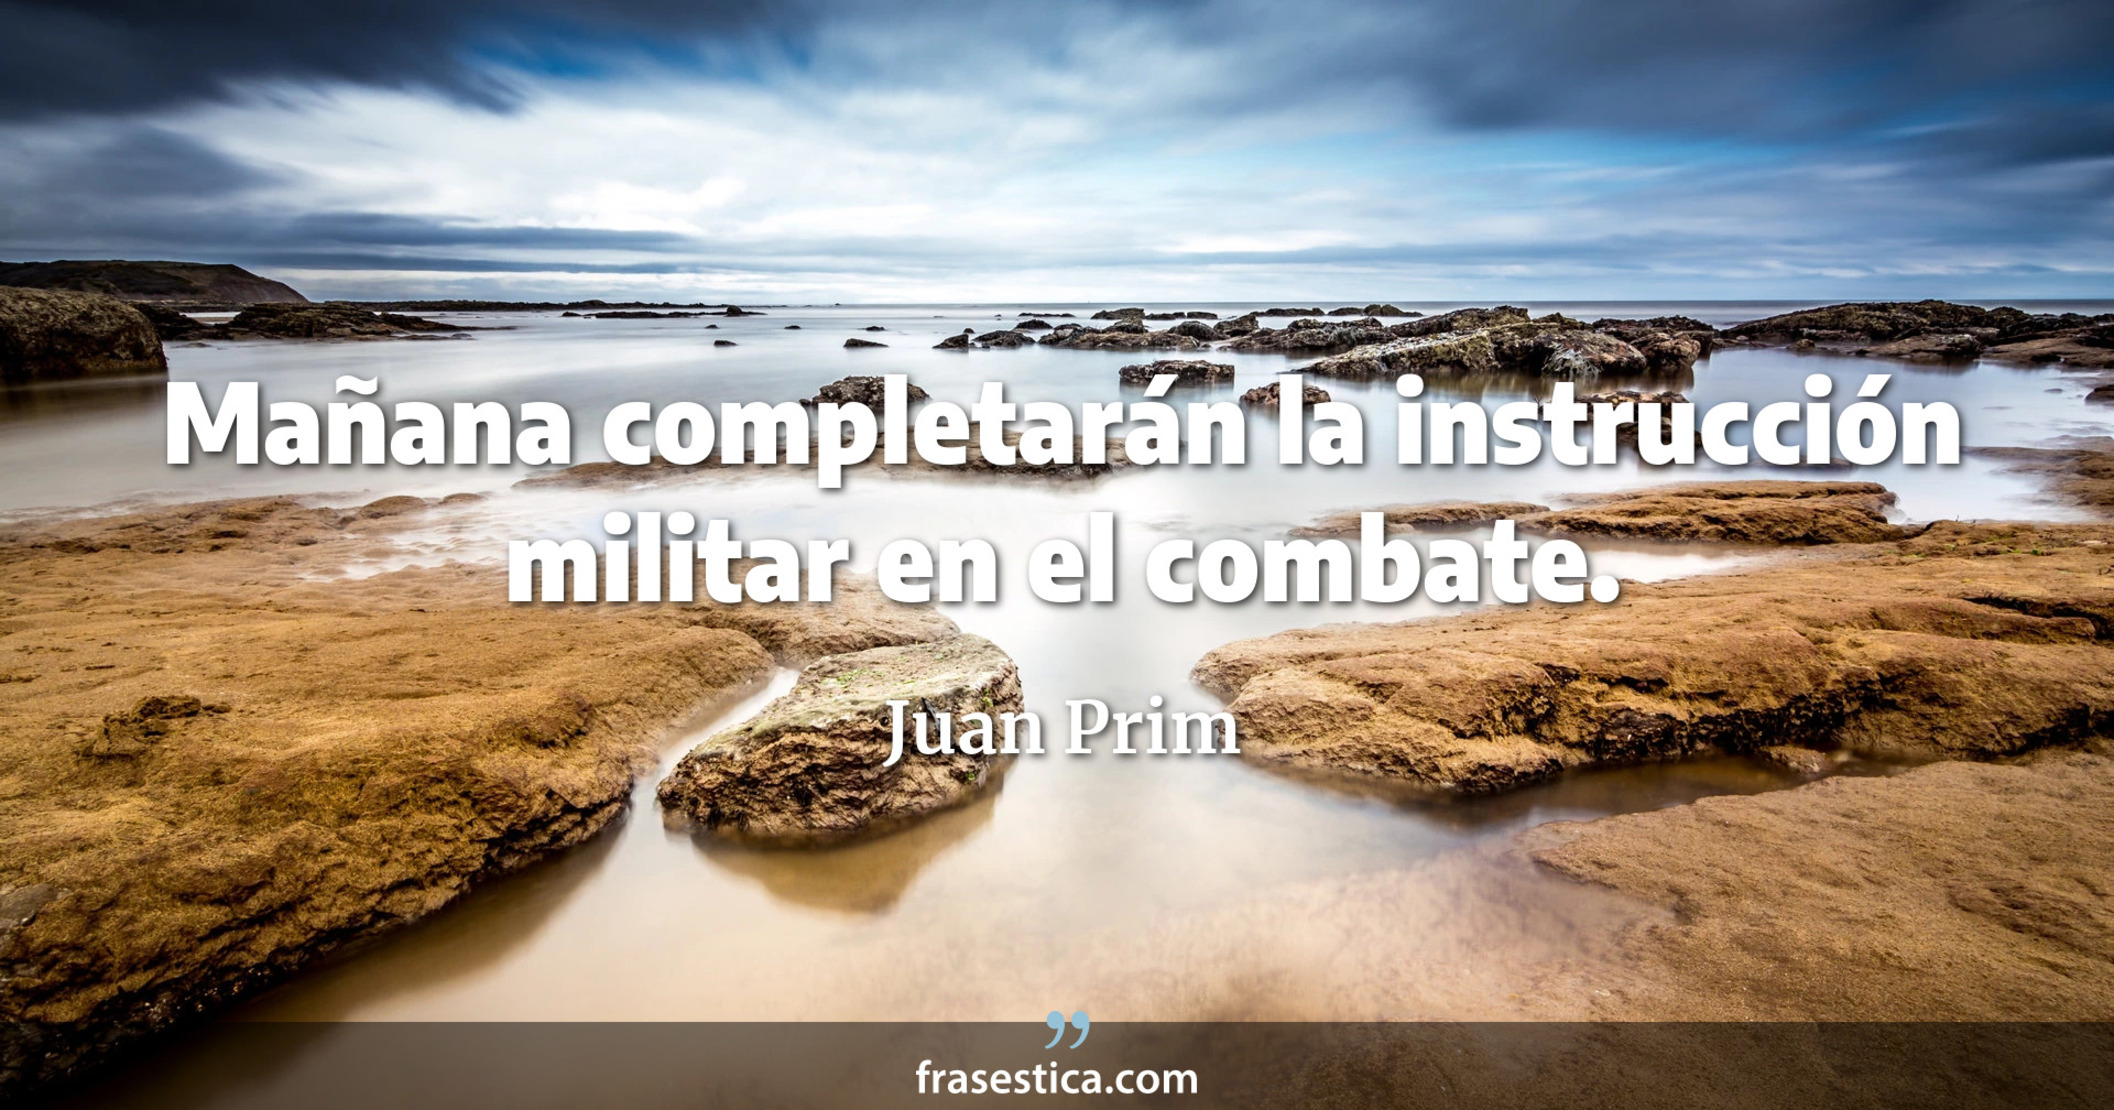 Mañana completarán la instrucción militar en el combate. - Juan Prim